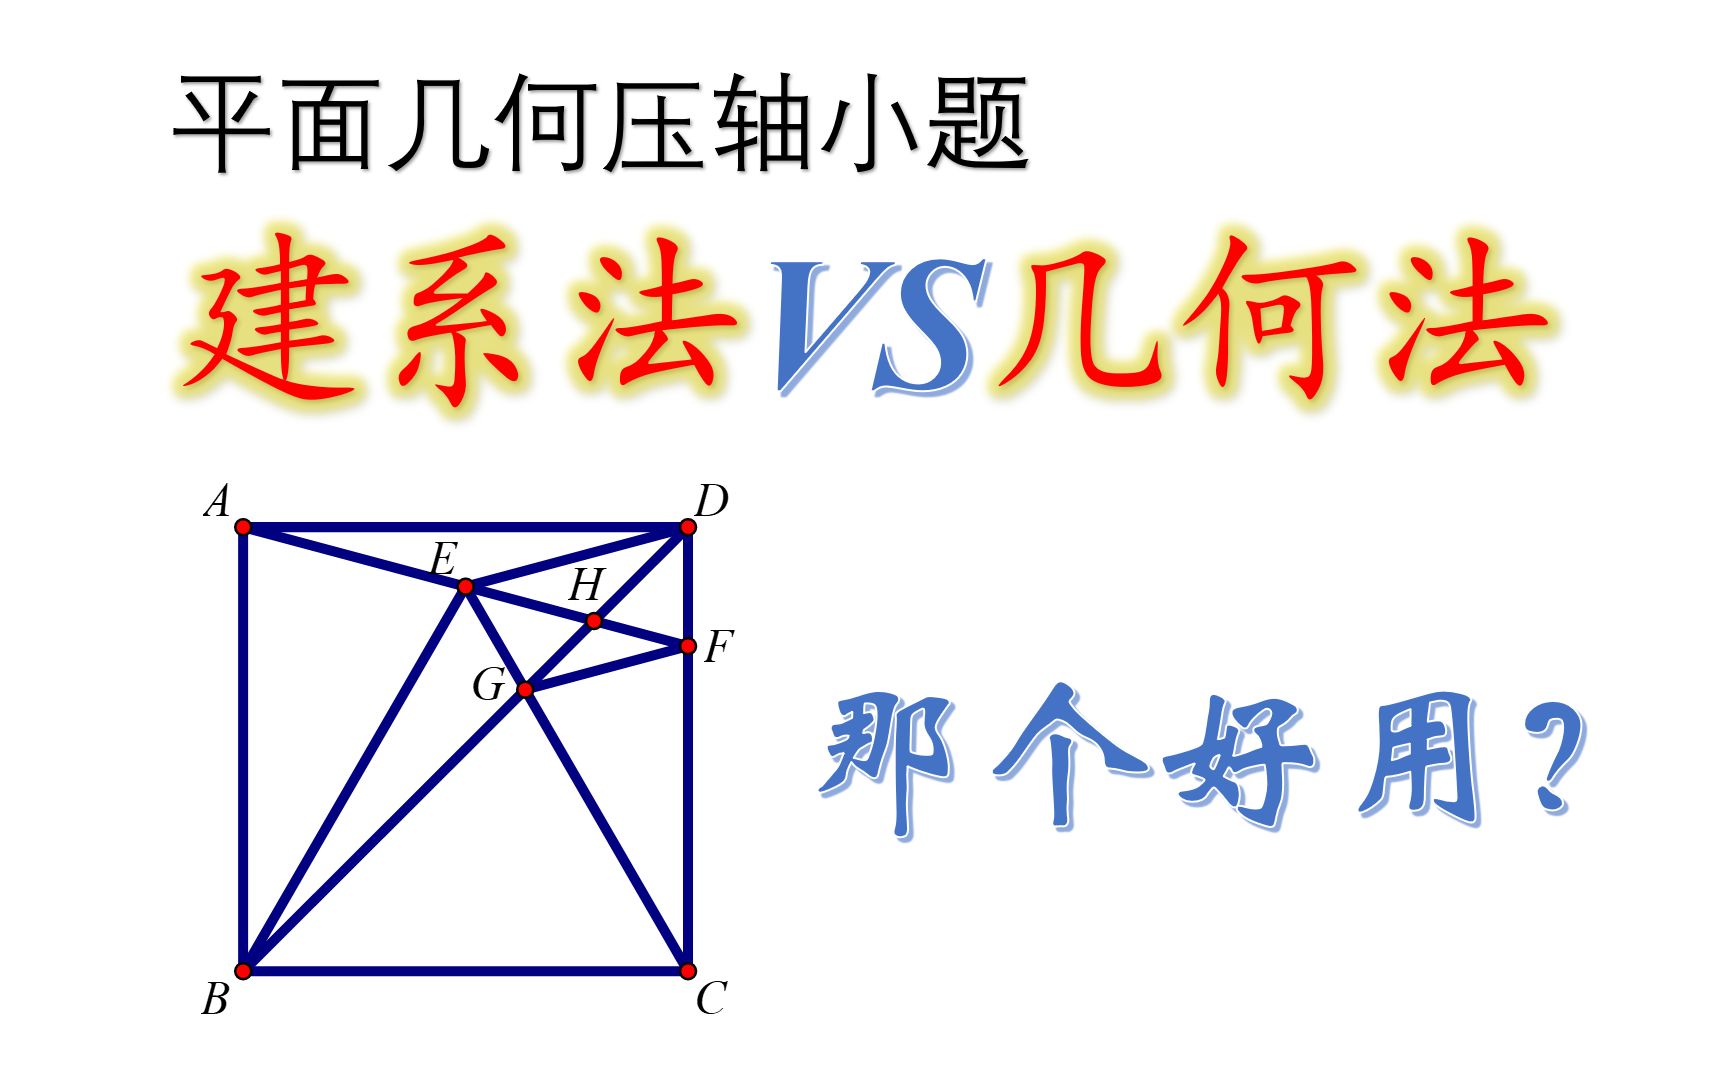 【邢哥数学】三角函数六挂图-bili_10244863383-记忆-哔哩哔哩视频